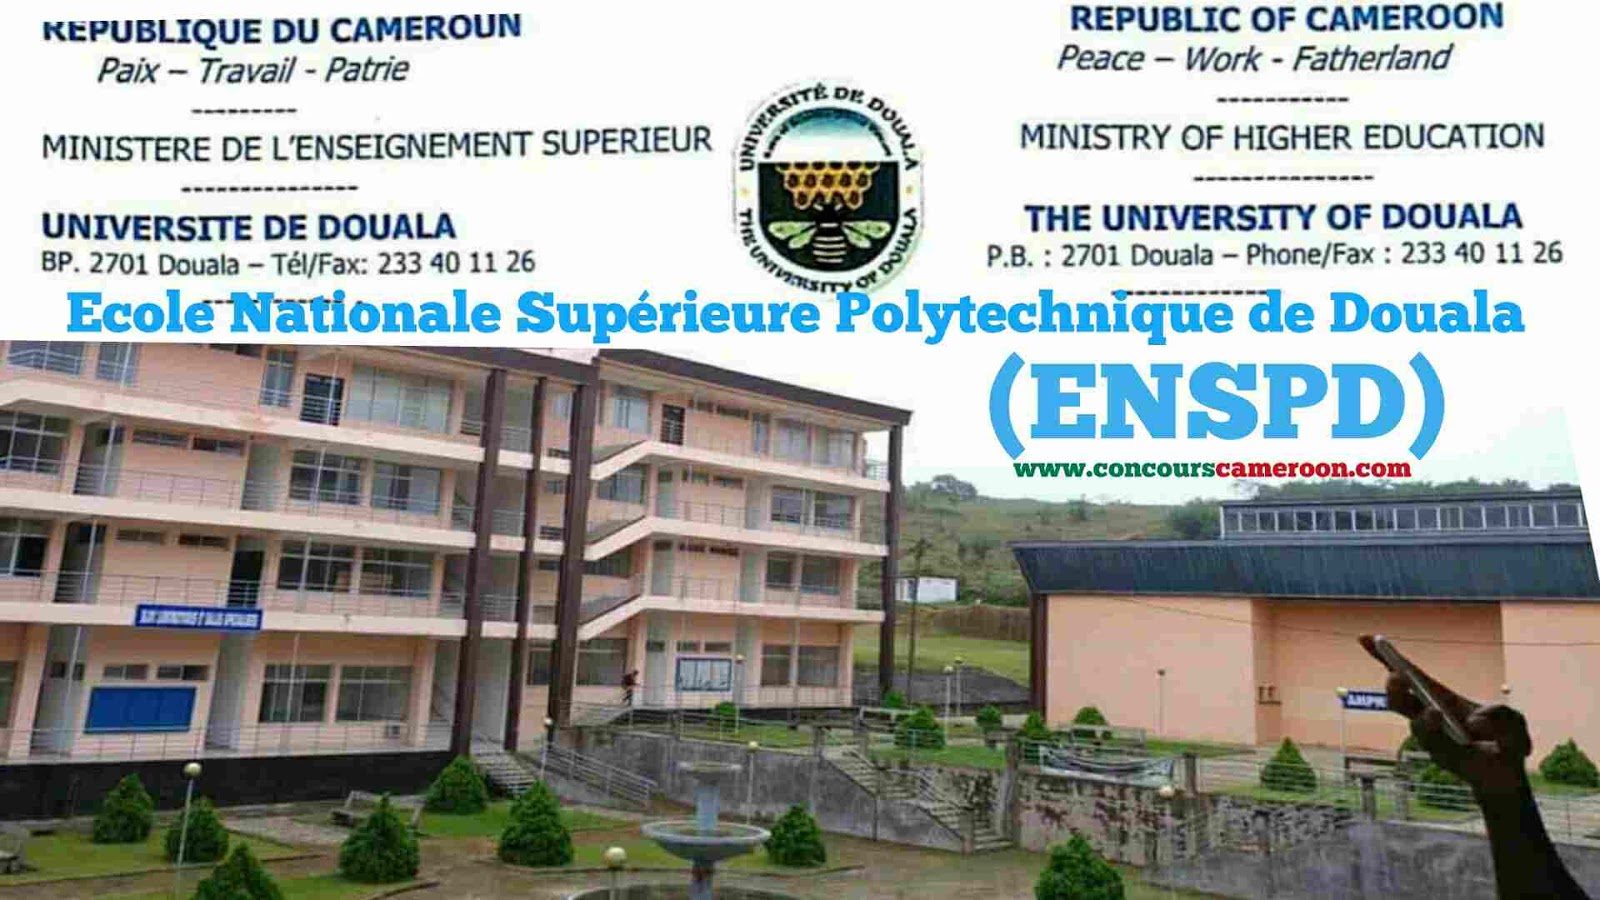 Concours d’entrée en 3ème année du cycle des ingénieurs de conception à ENSPD de l’Université de Douala 2020-2021